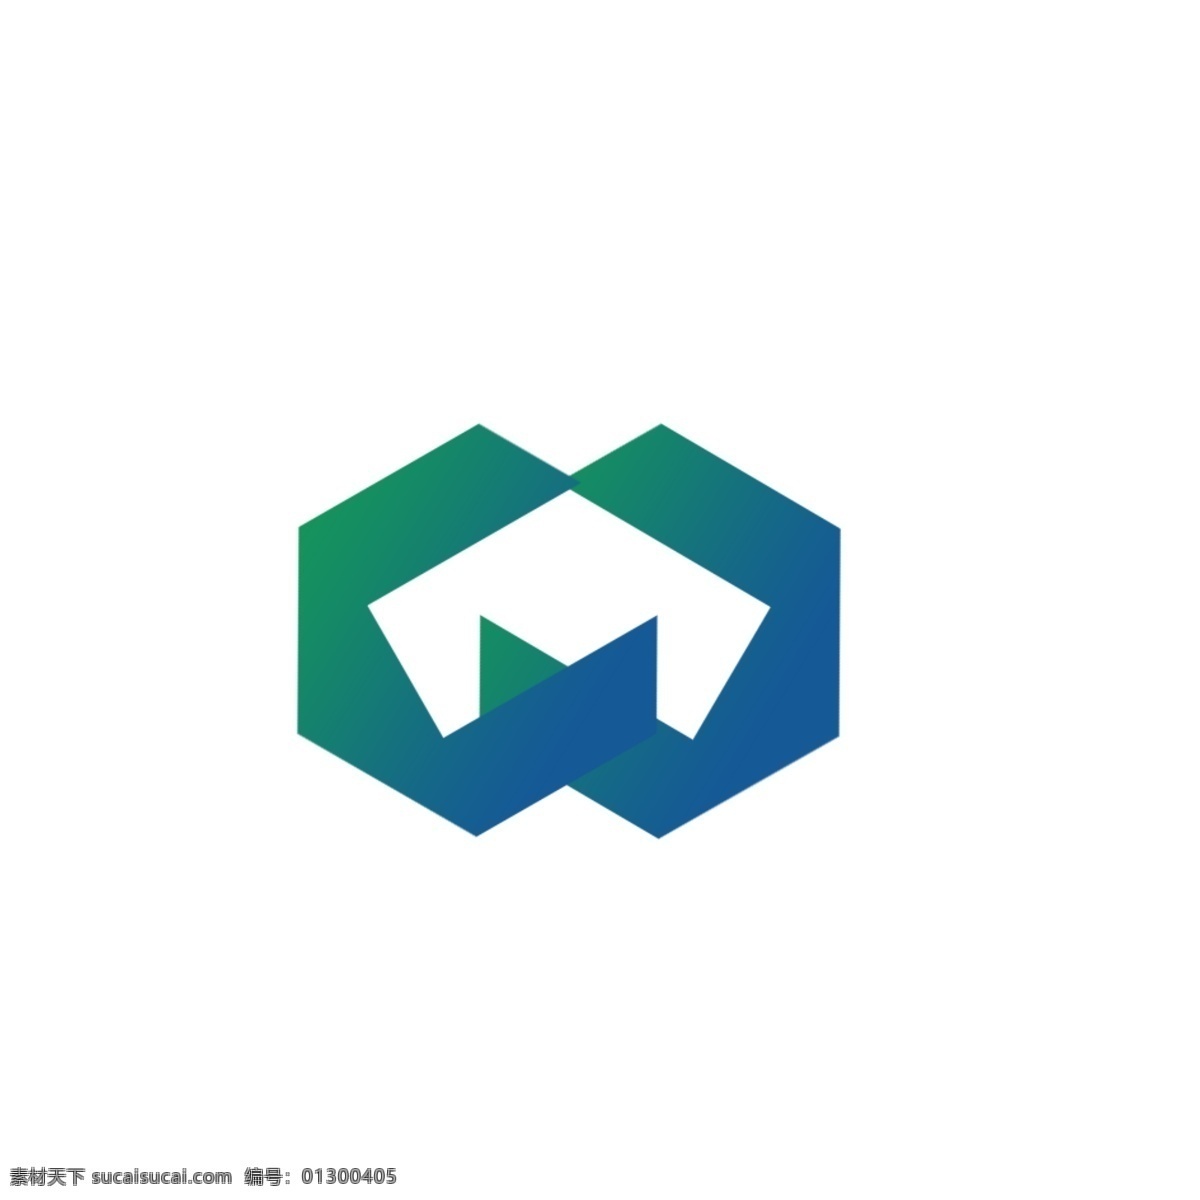 公益组织 公司 logo 蓝色 绿色 简约 公司logo 绿色logo 蓝色logo 简约logo logo设计